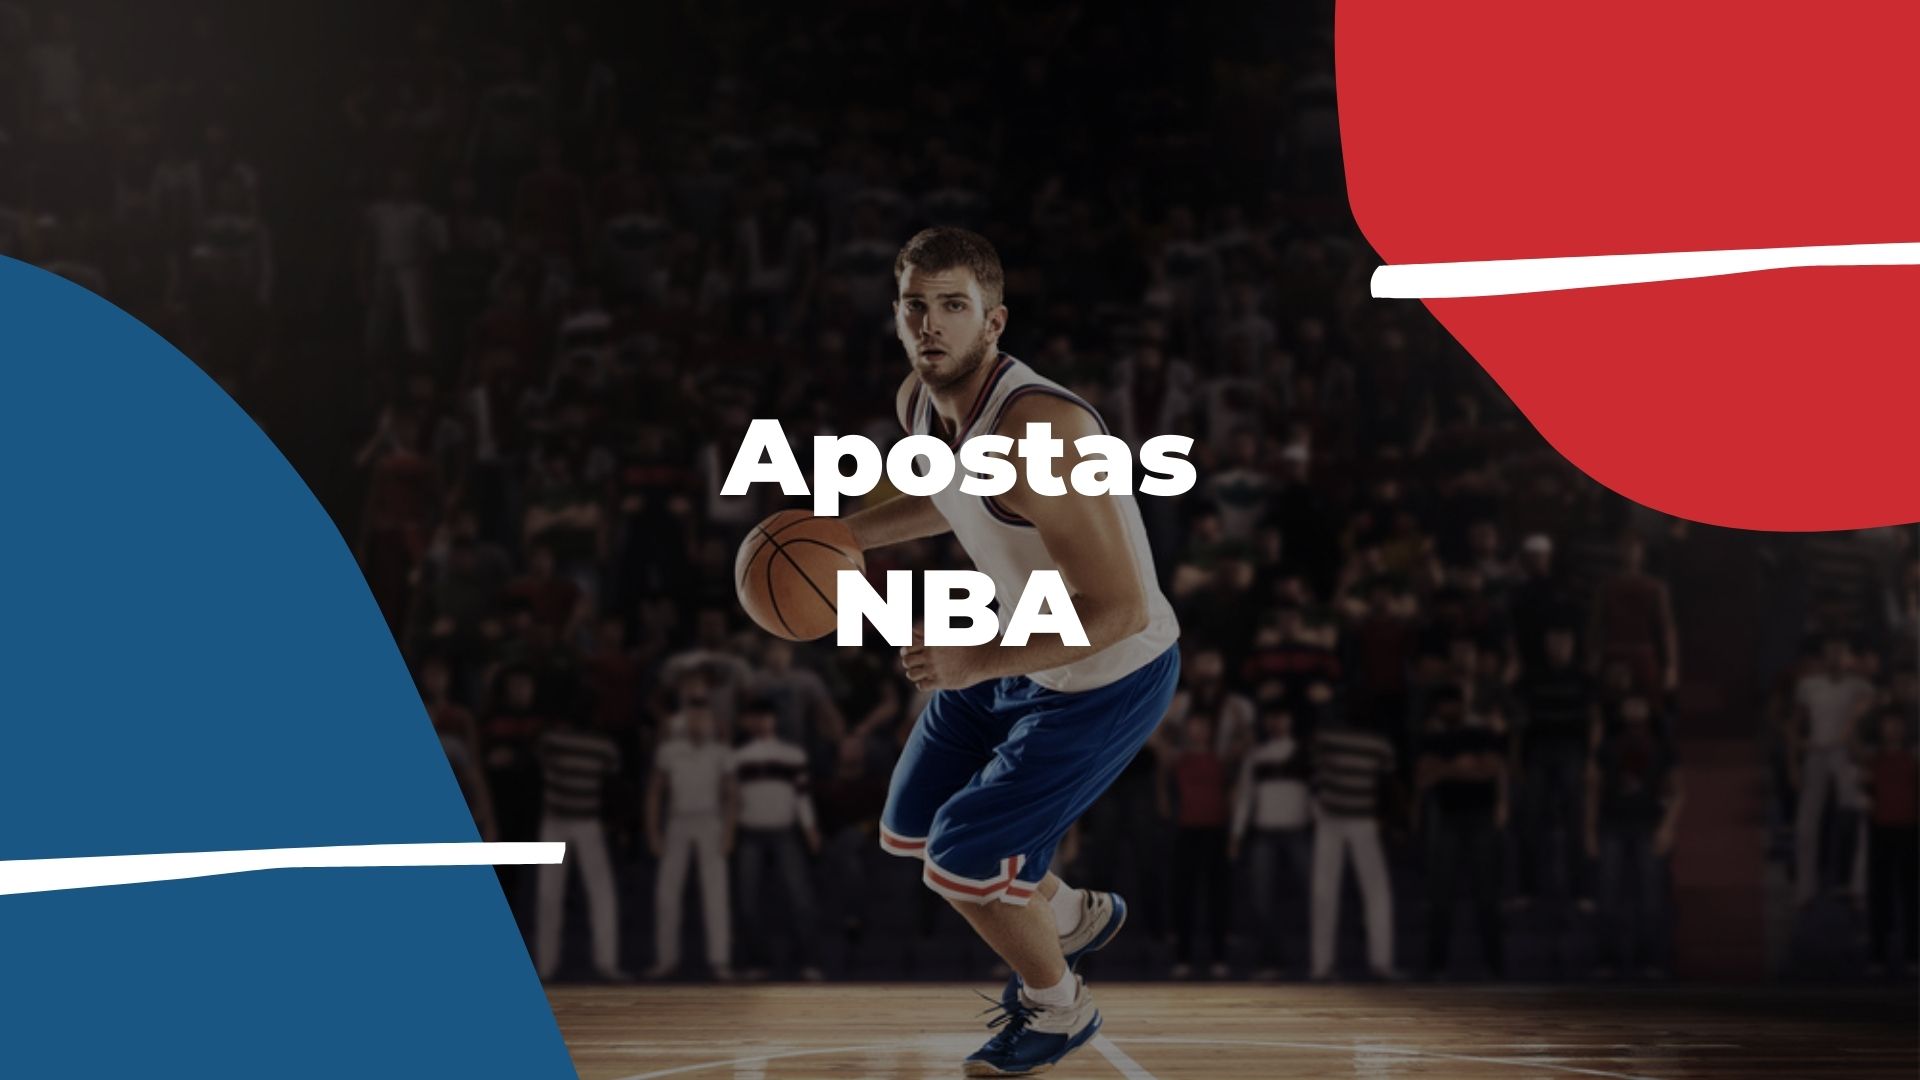 Apostas NBA: os melhores sites de apostas